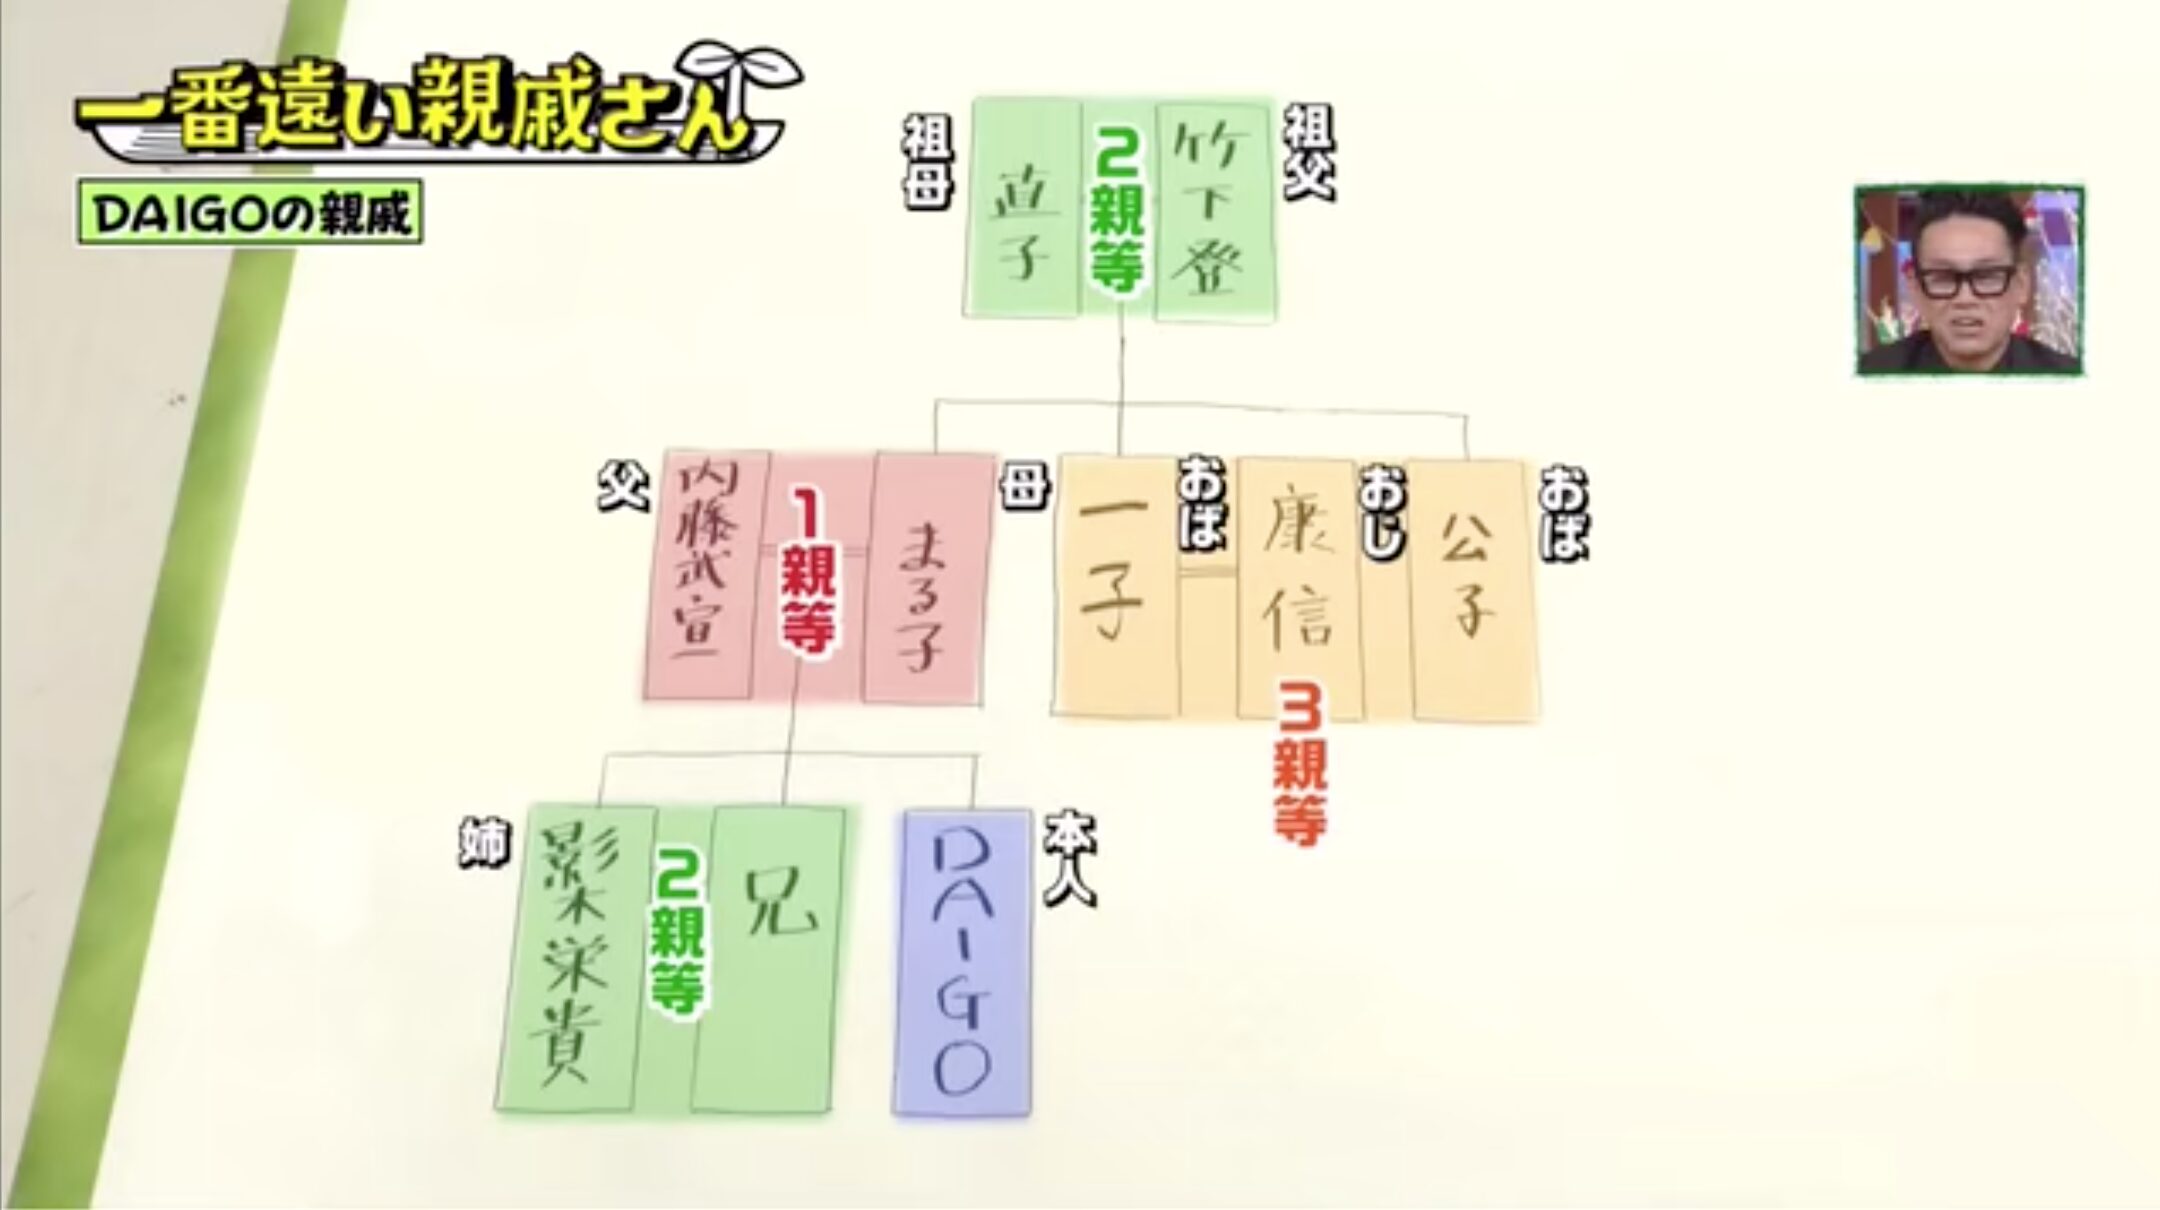 DAIGOの家系図